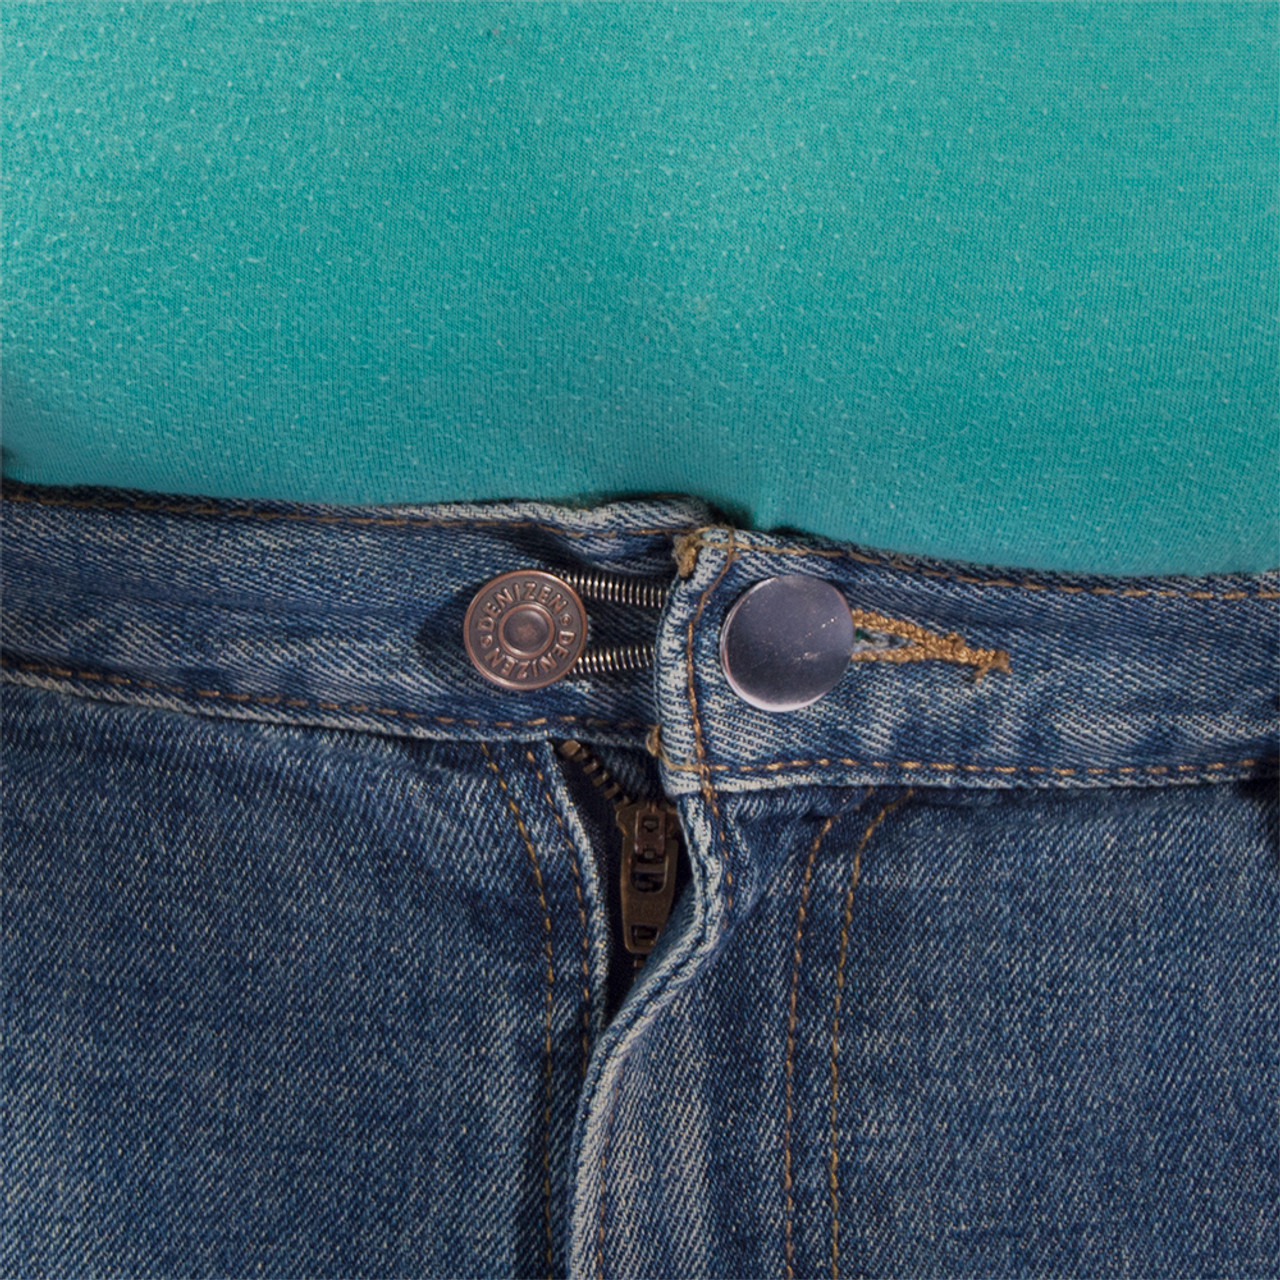 15-Pack Button Pant Extender Kit (5 Black, 5 White, 5 Spring)